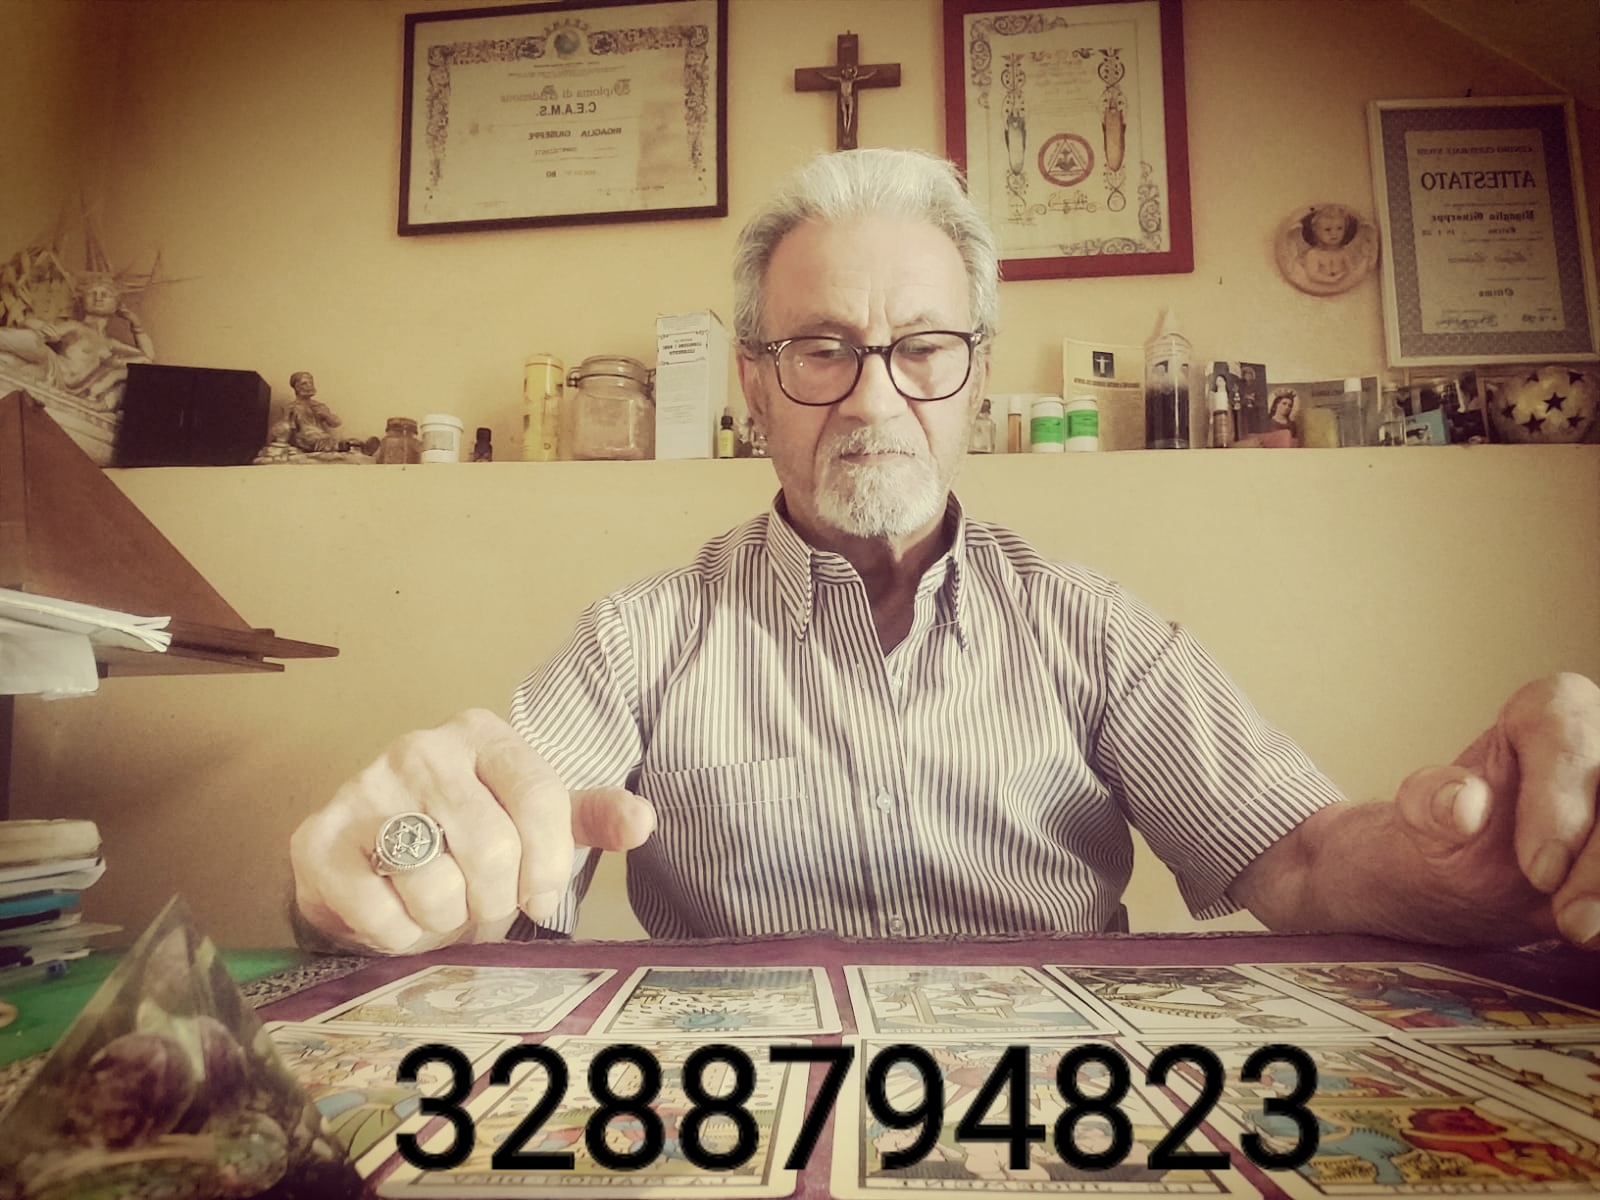  cartomante eros esperto in magia brasiliana 